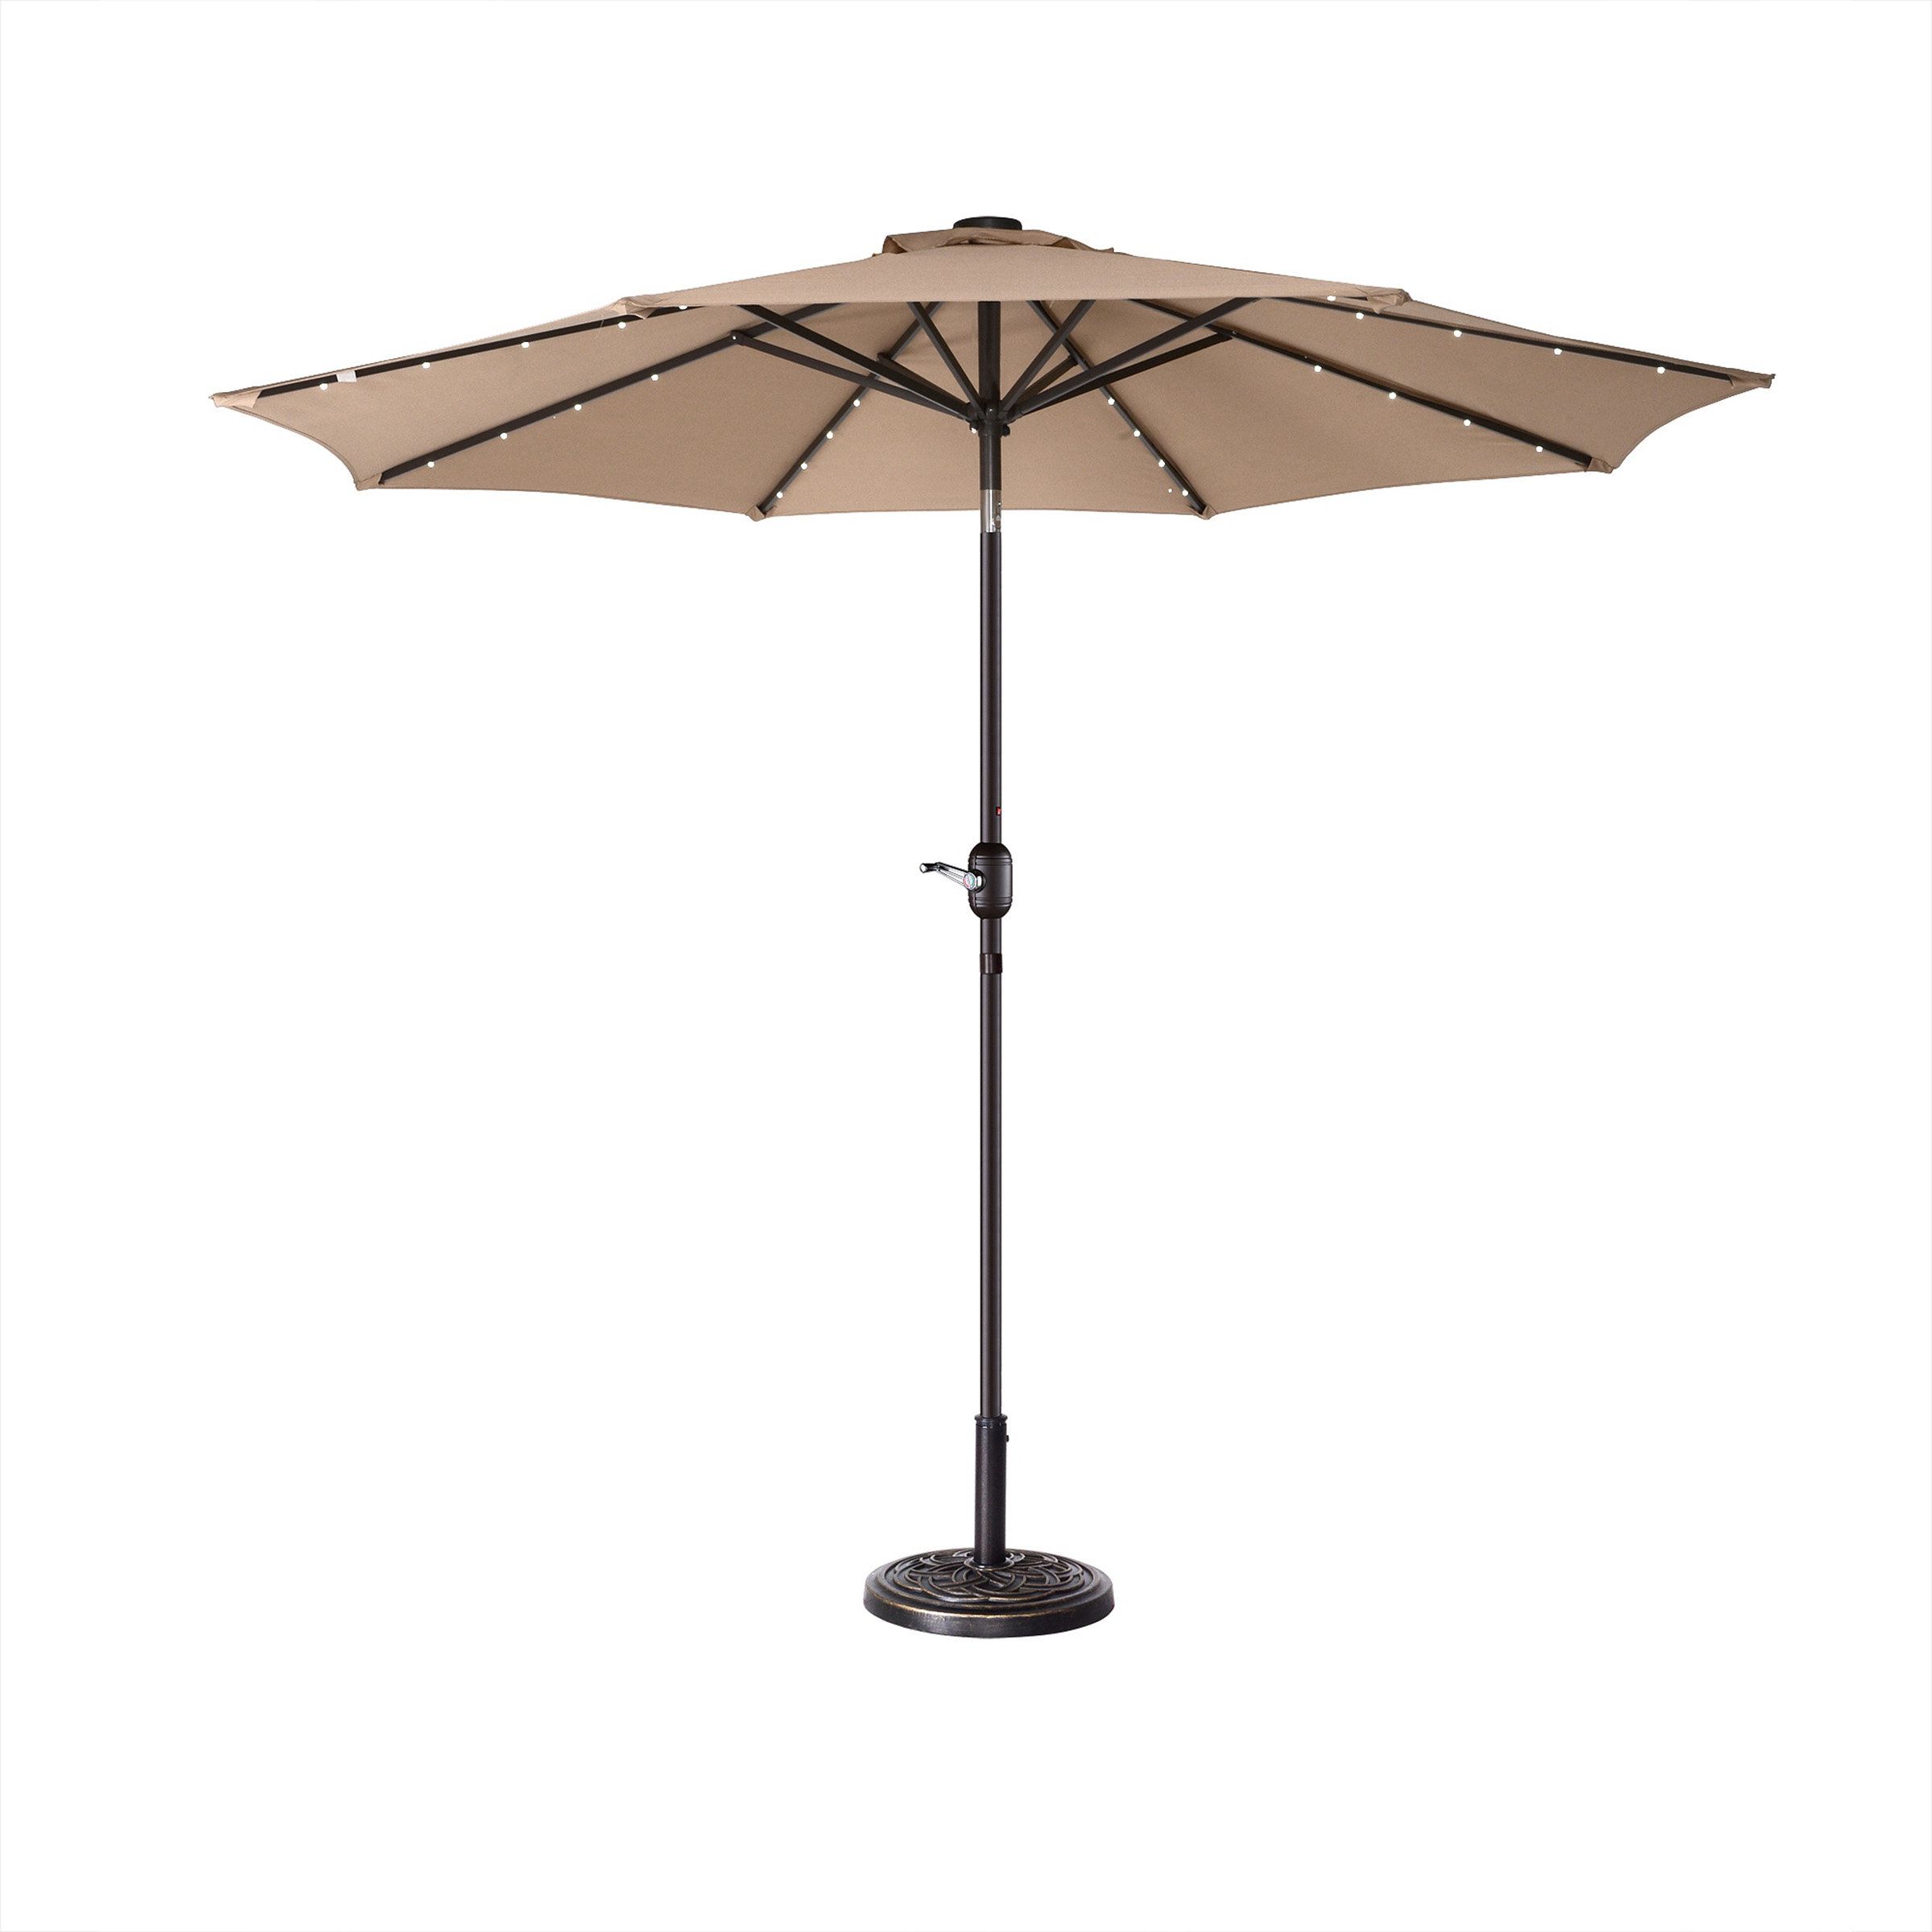 Fashionable Coggeshall Led Lighted 9' Market Umbrella For Coggeshall Led Lighted Market Umbrellas (View 1 of 20)